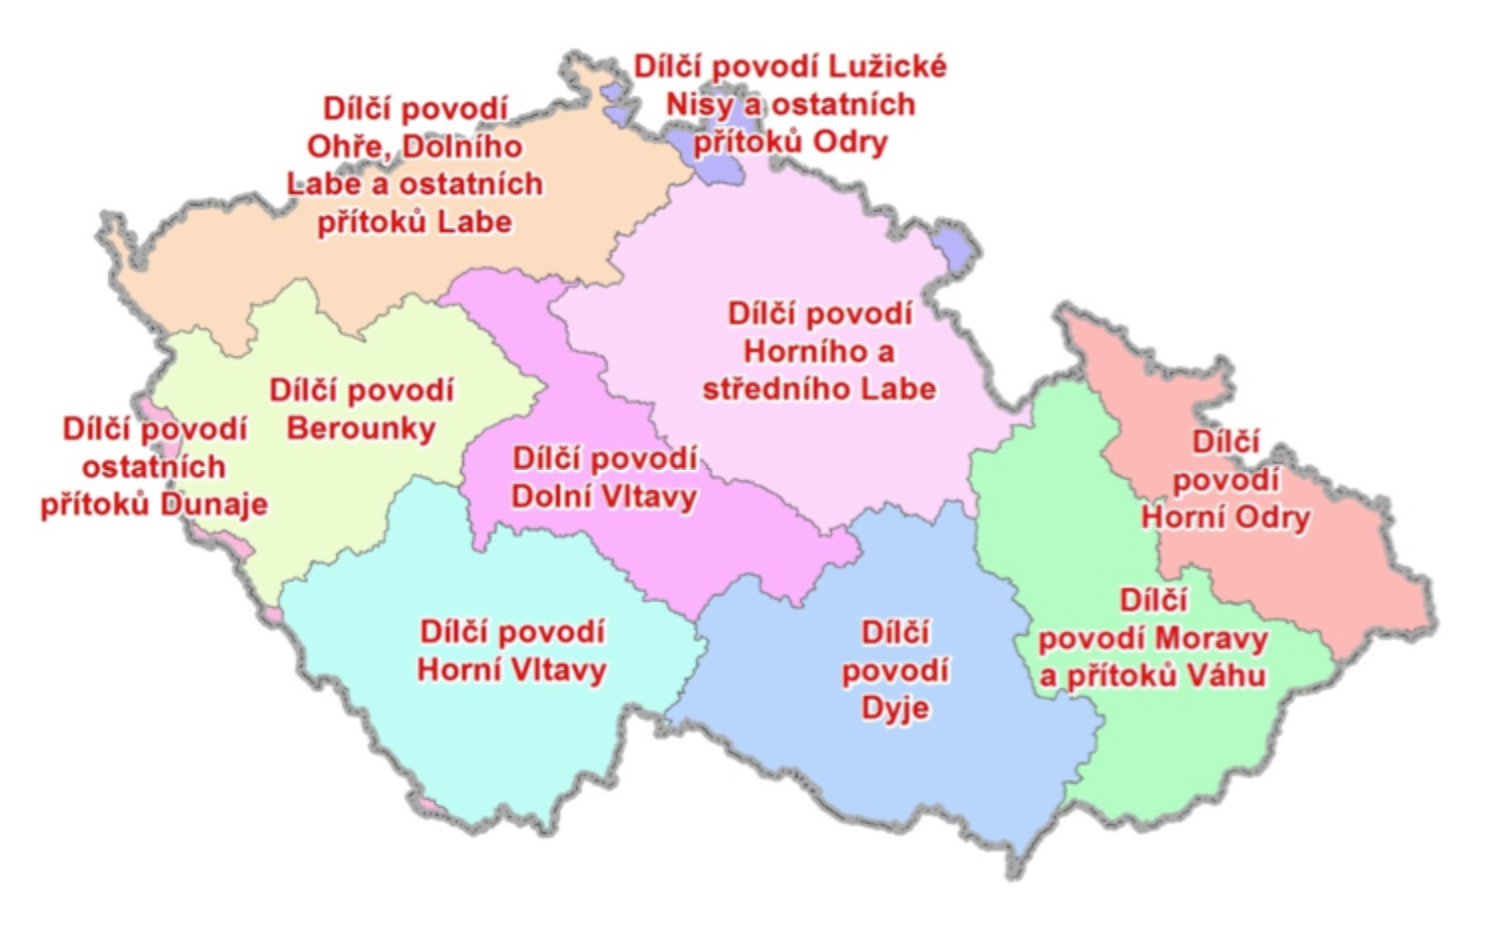 Obr. I.1.1 – Vymezení dílčích povodí v ČR